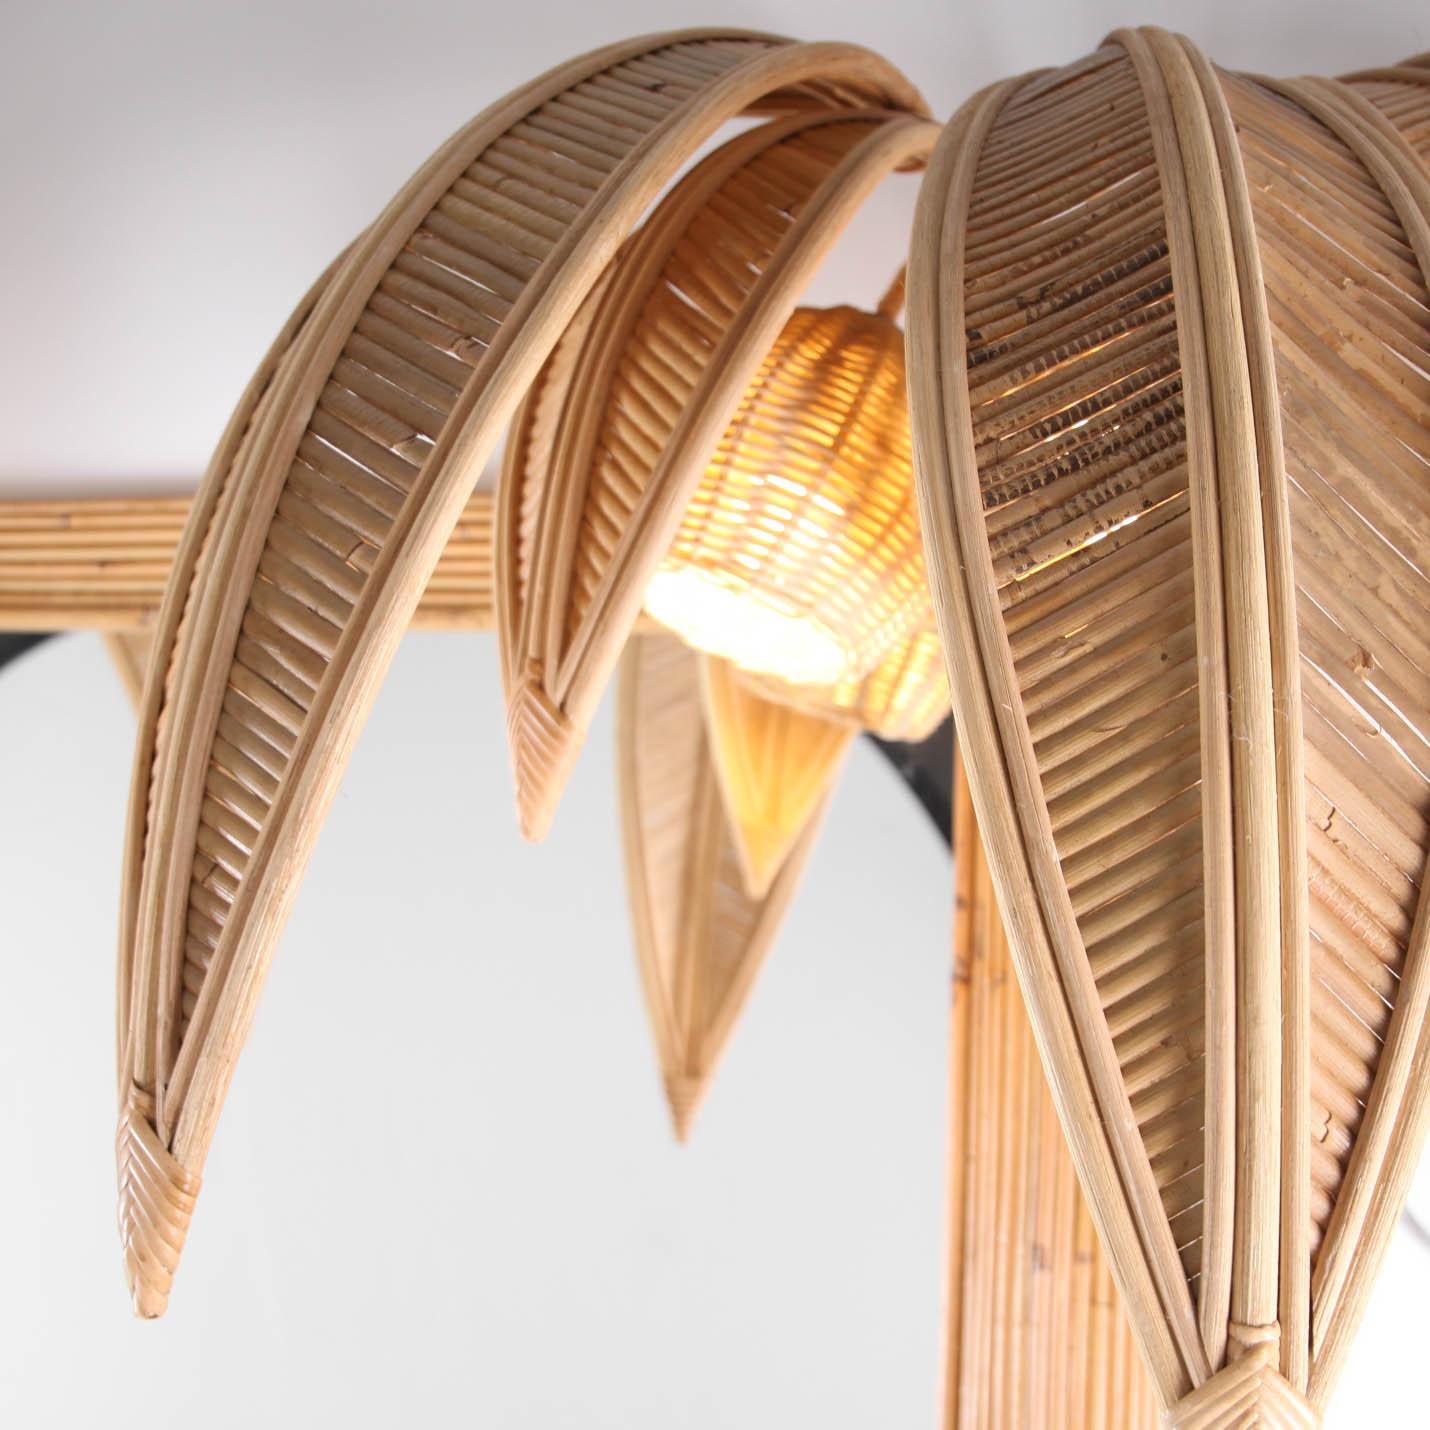 Rare grand miroir en rotin en forme de cocotier / palmier avec 4 lumières dans les noix de coco. Typique des années soixante-dix et inspiré par le travail de la Maison Jansen.
Un travail de grande qualité, entièrement réalisé à la main. Excellent